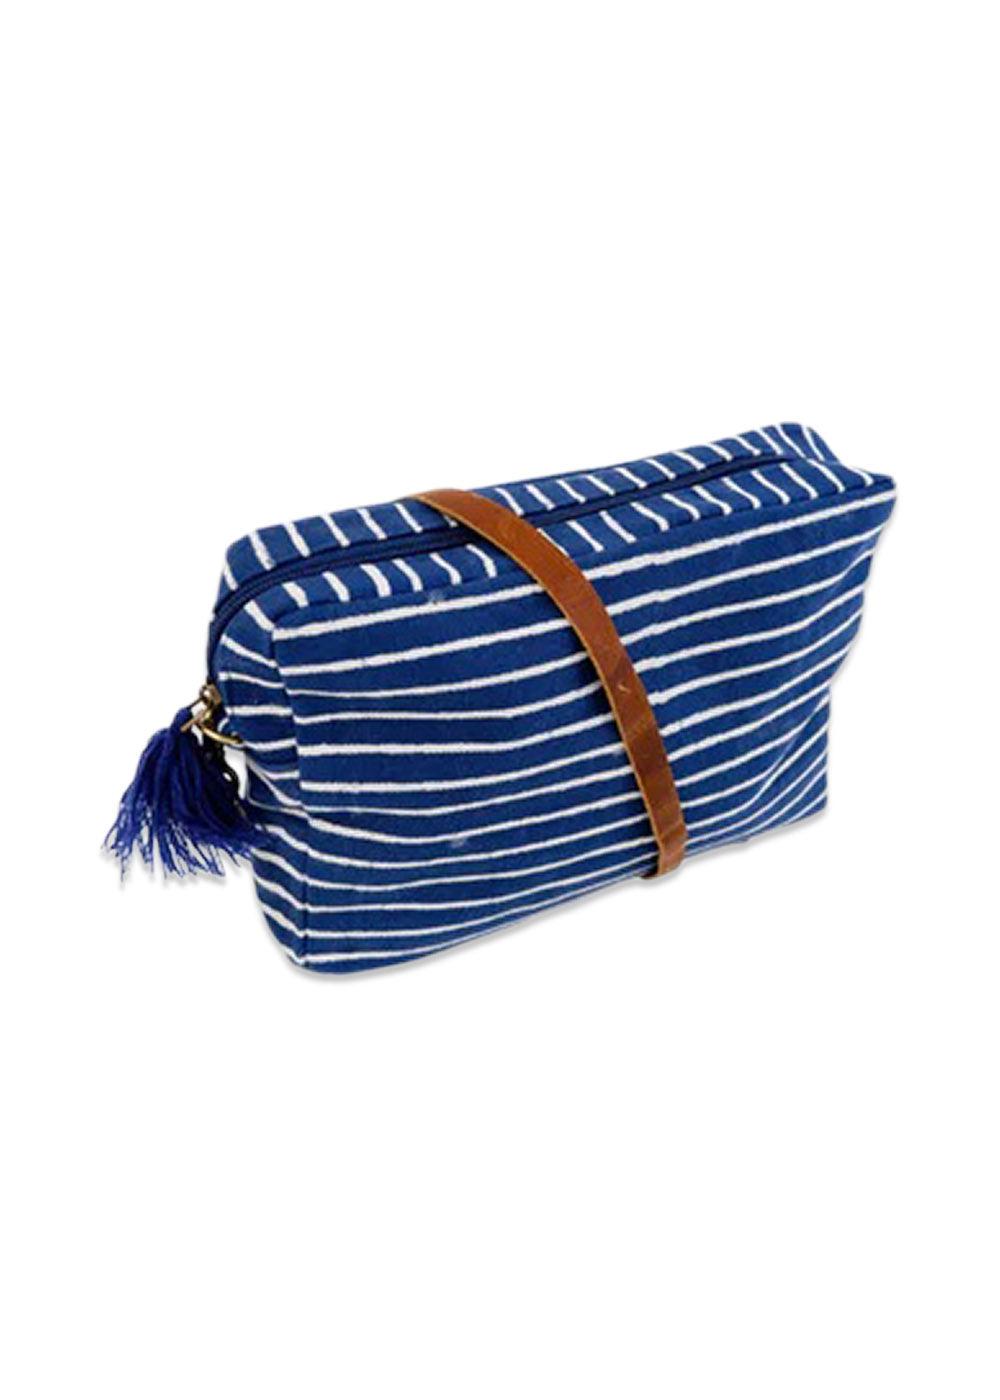 BCOCEAN vintage-look striped crossover bag - Ocean Stripe